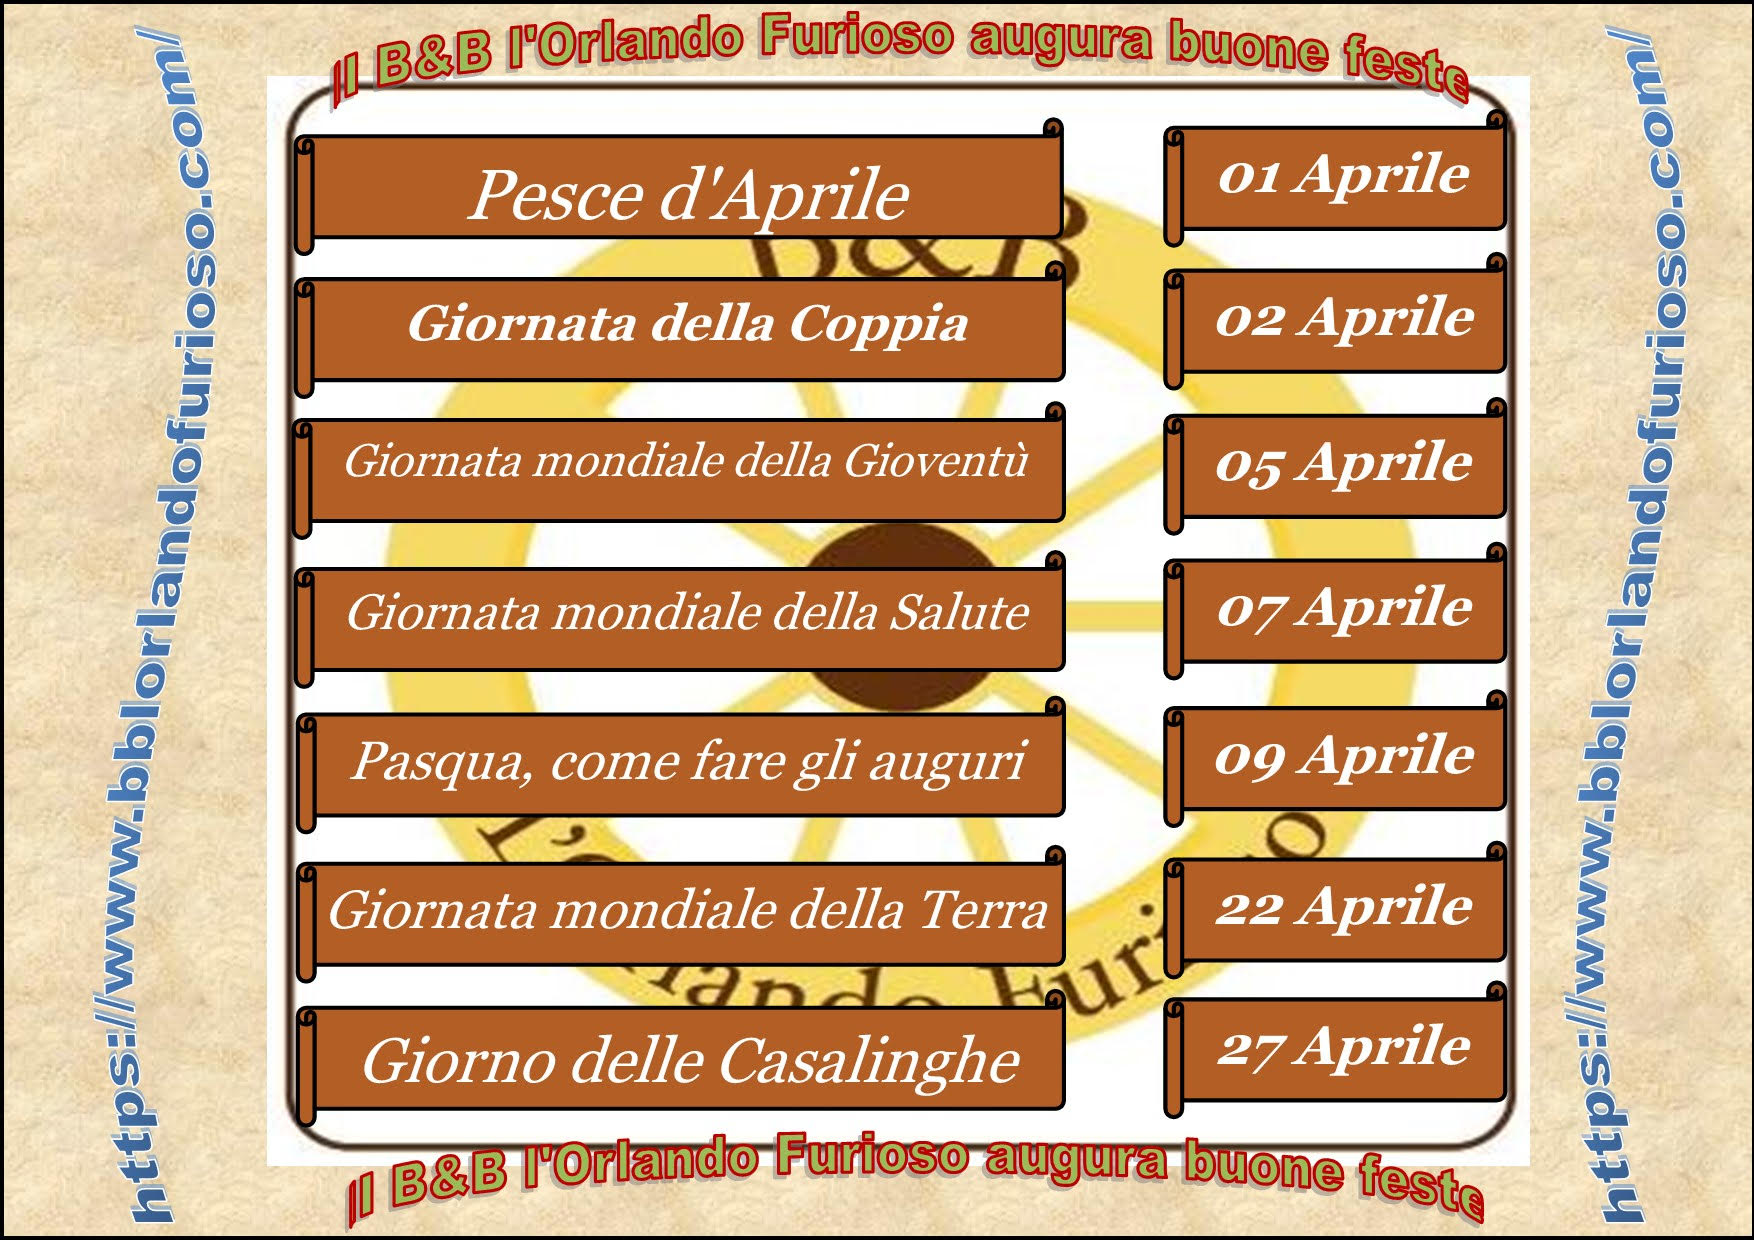 Il BB l'Orlando Furioso Palermo Centro augura buone feste aprile